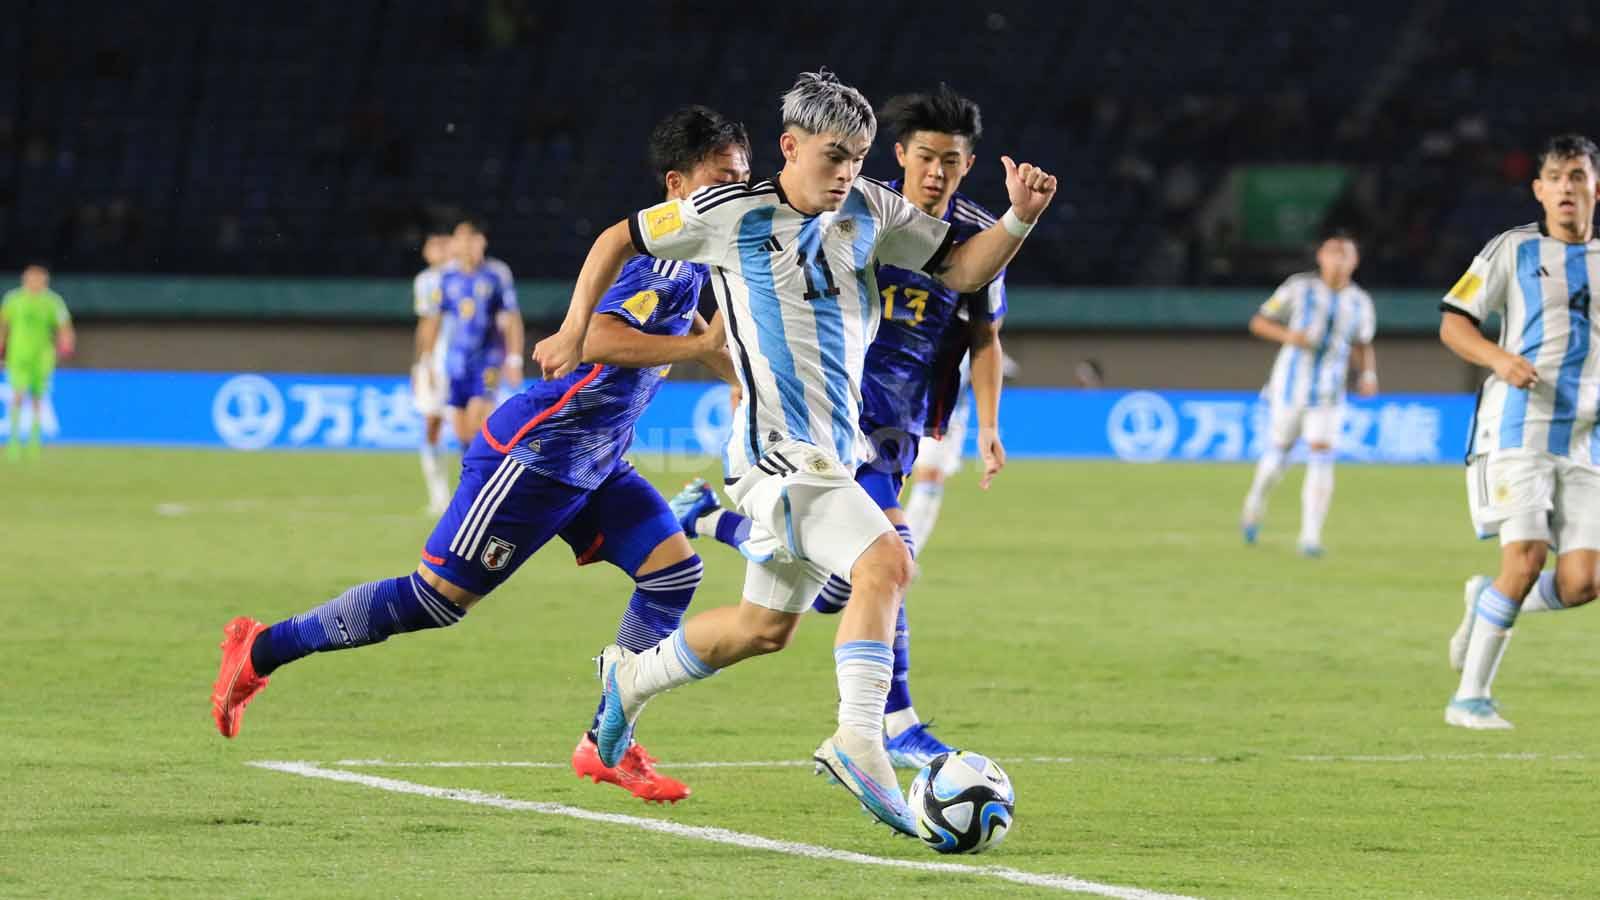 Gelandang Timnas Argentina U-17, Santiago Lopes, melewati bek Timnas Jepang U-17, Keita Kosugi.